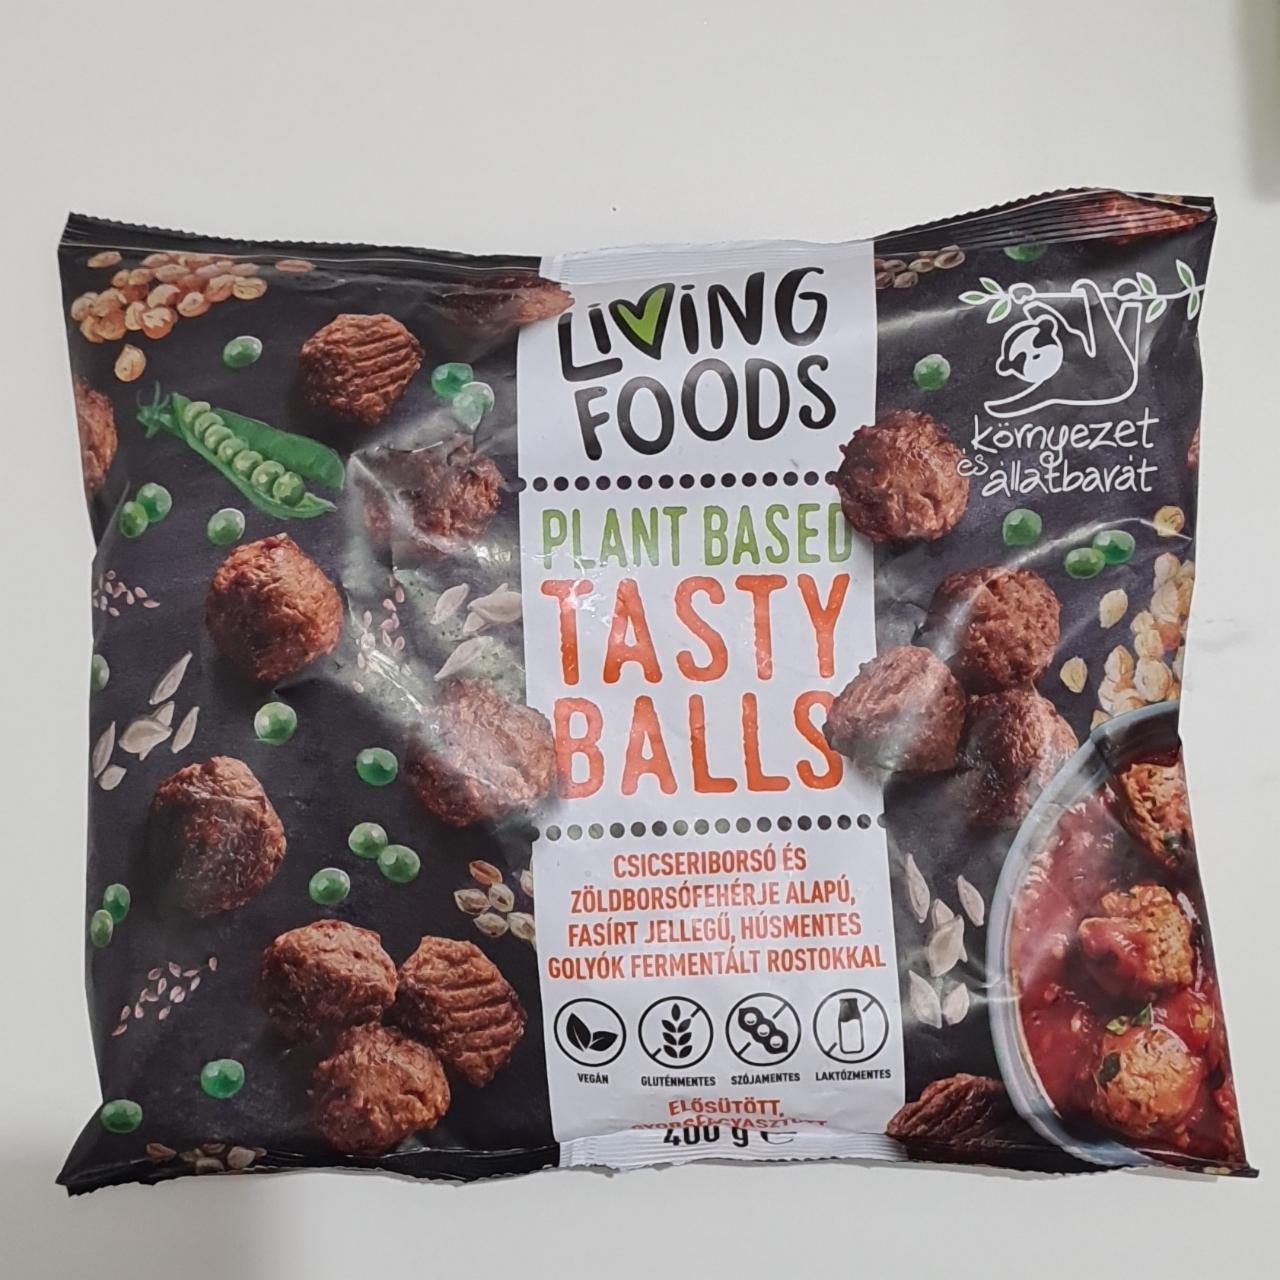 Képek - Plant based tasty balls Living foods